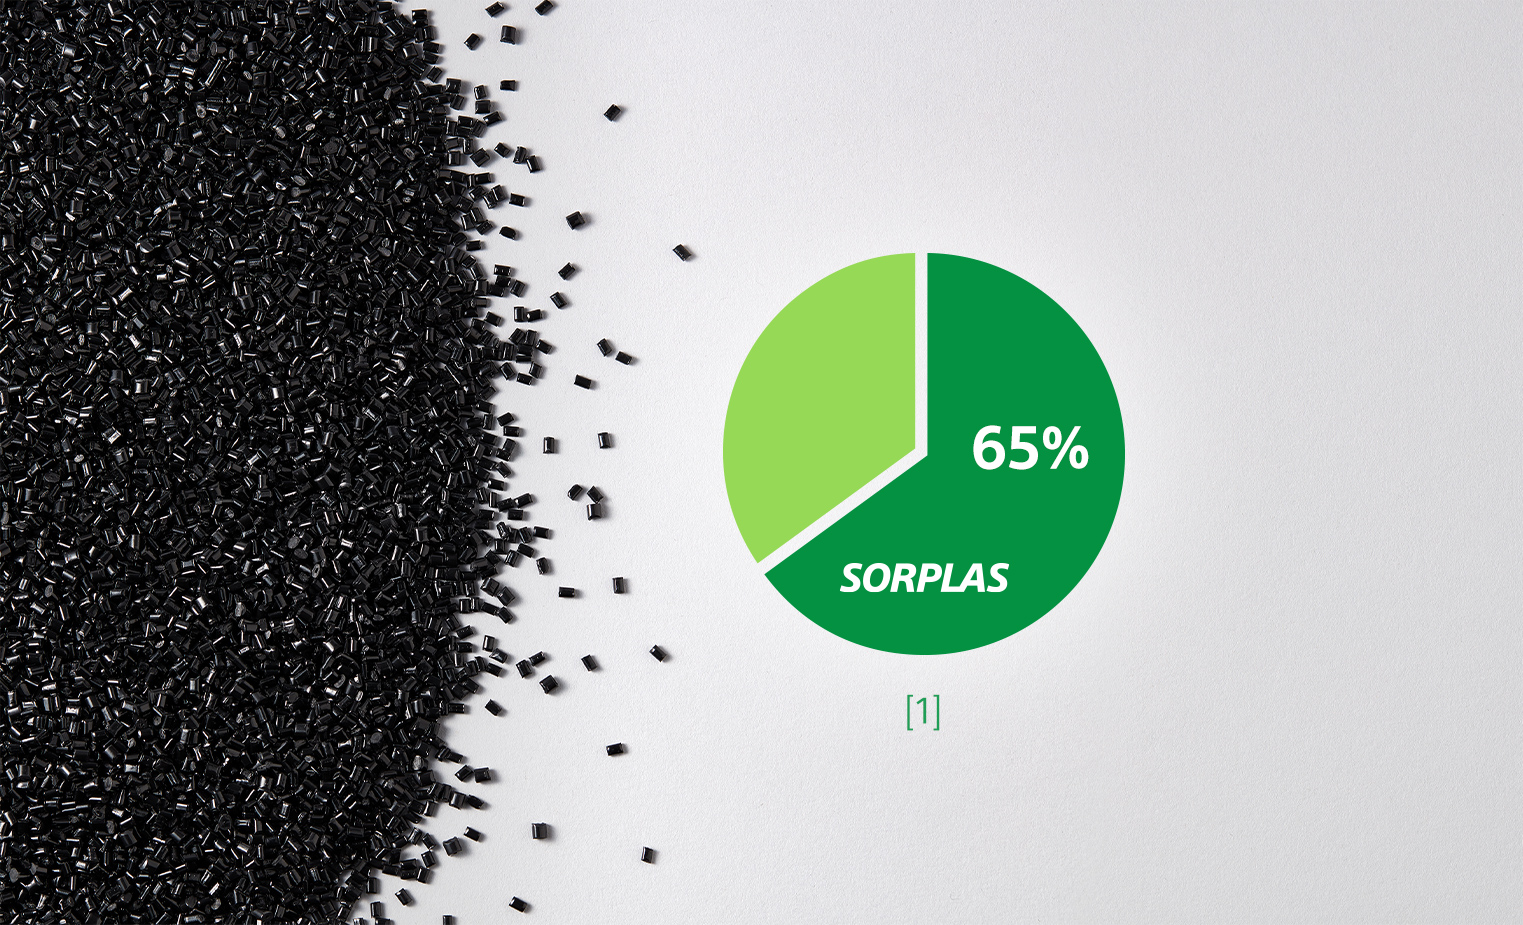 תמונה של כדורים שחורים ותרשים עוגה. התרשים מצביע על כך שה-SORPLAS מהווה 65% מסך כל החומרים.